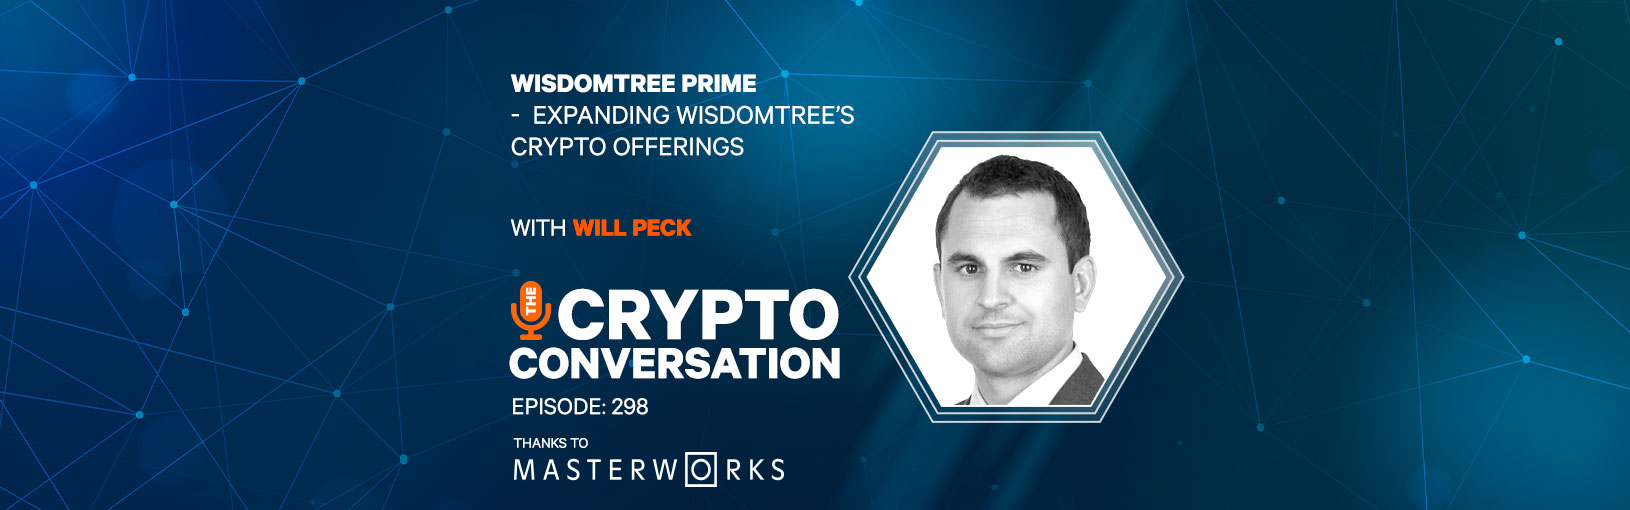 WisdomTree Prime – Expanding WisdomTree’s Crypto Offerings